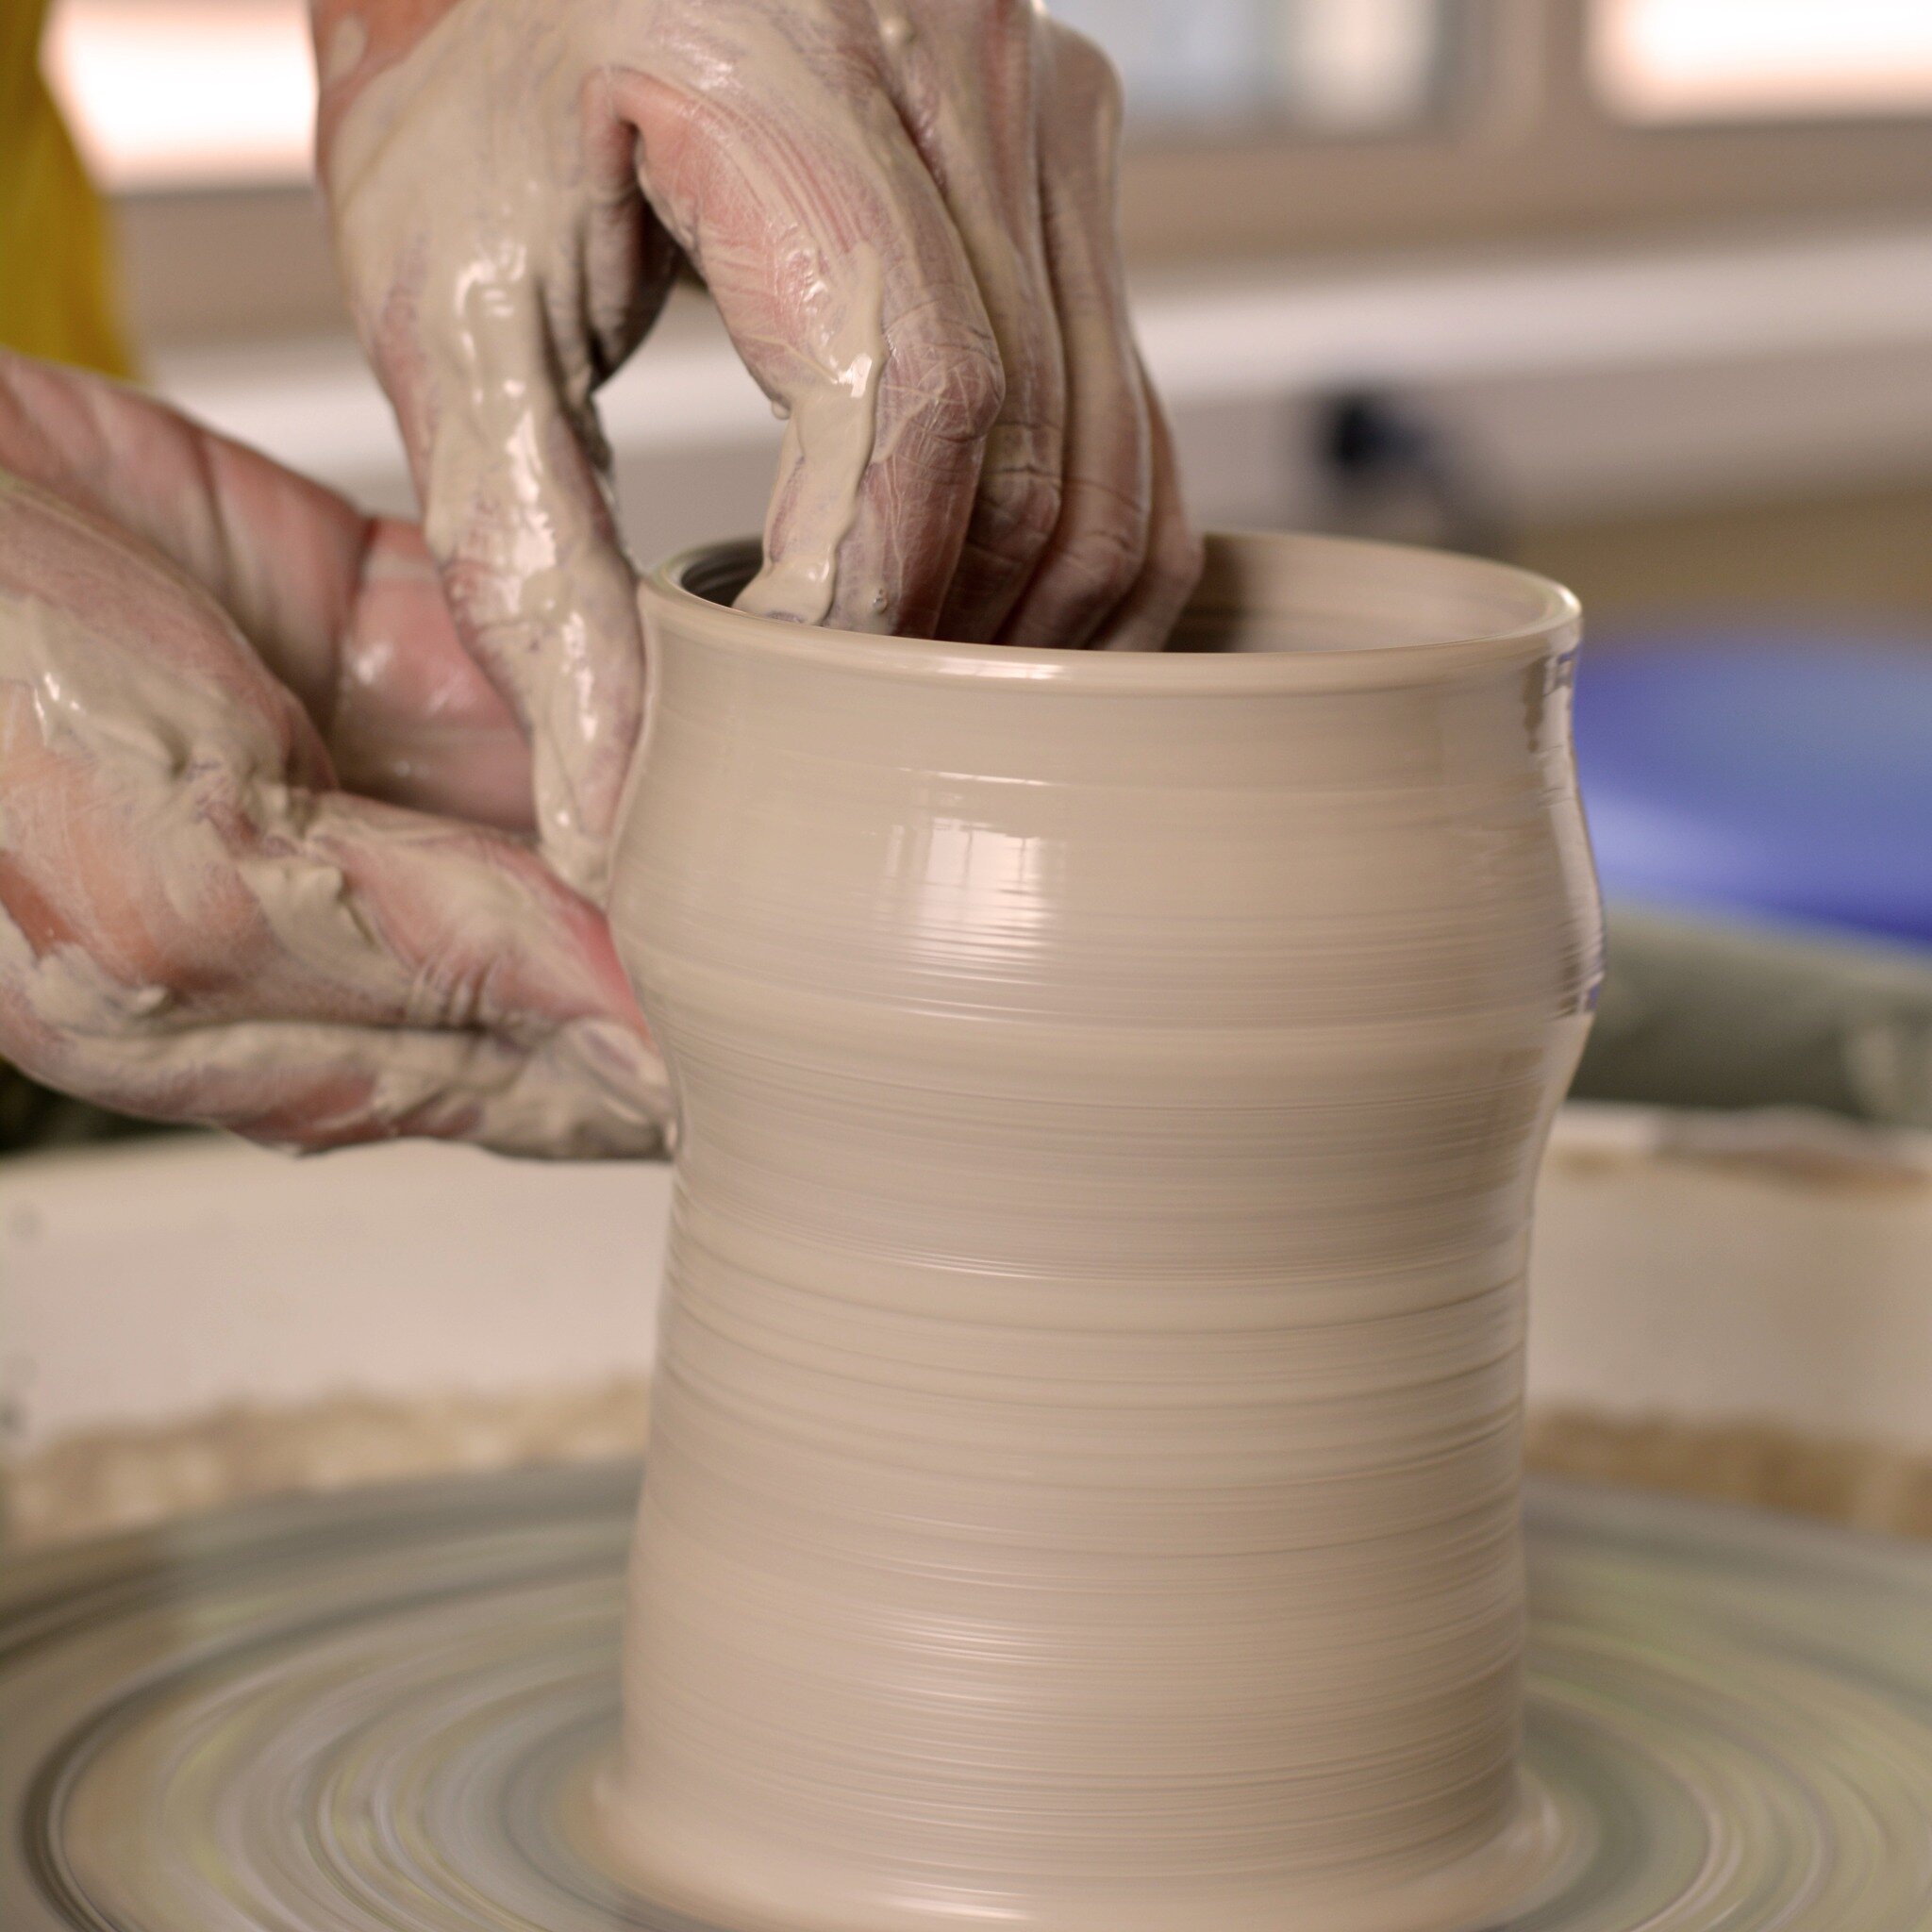 Le saviez-vous ? 
La poterie est une activit&eacute; apaisante qui peut aider &agrave; r&eacute;duire le stress et l'anxi&eacute;t&eacute;. Une &eacute;tude publi&eacute;e dans le Journal of the American Art Therapy Association a montr&eacute; que la